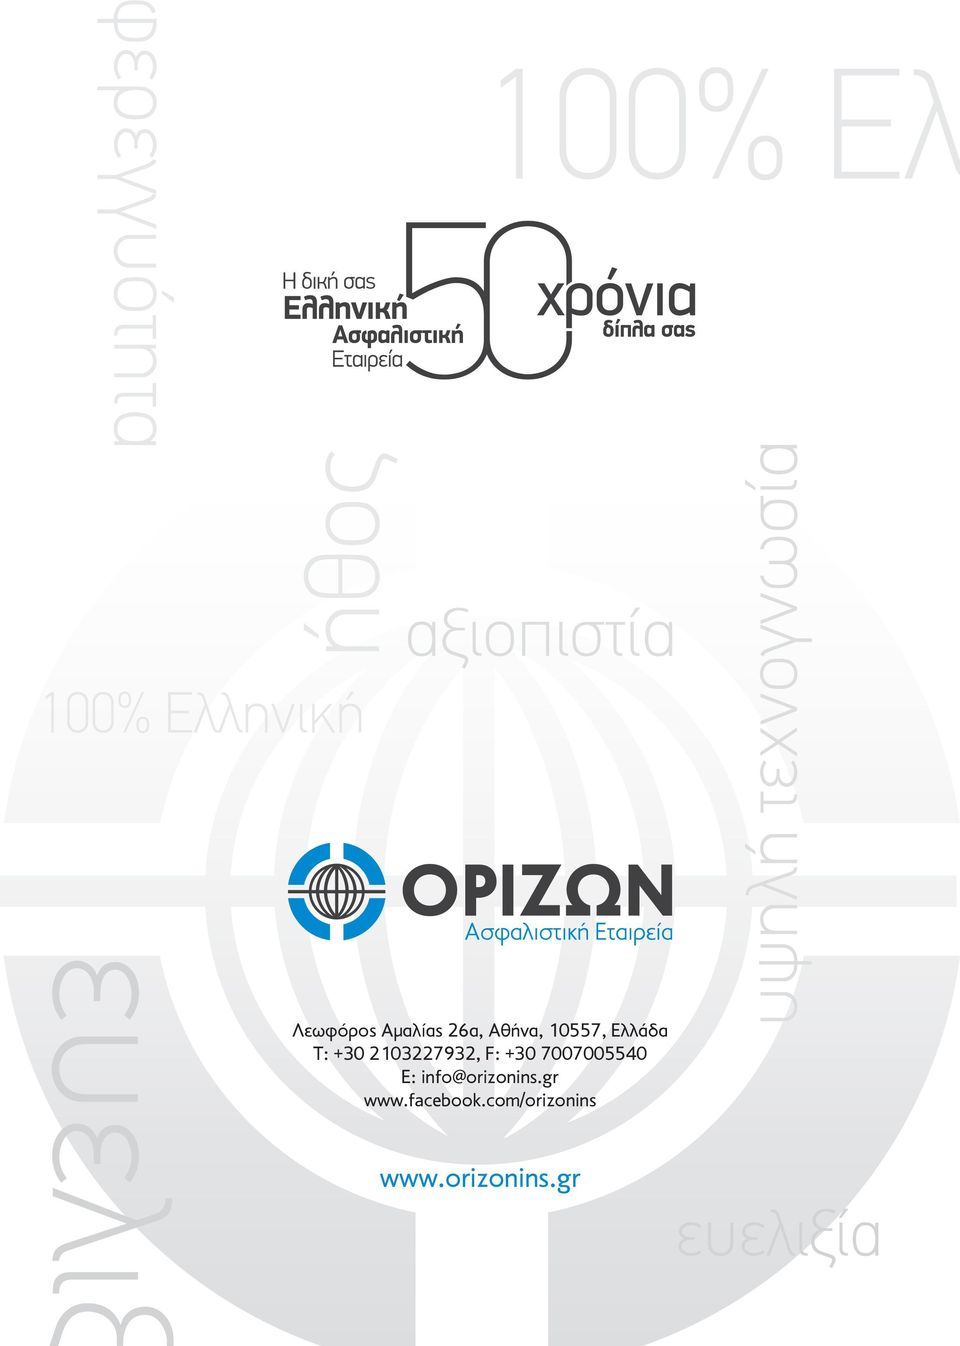 7007005540 Ε: info@orizonins.gr www.